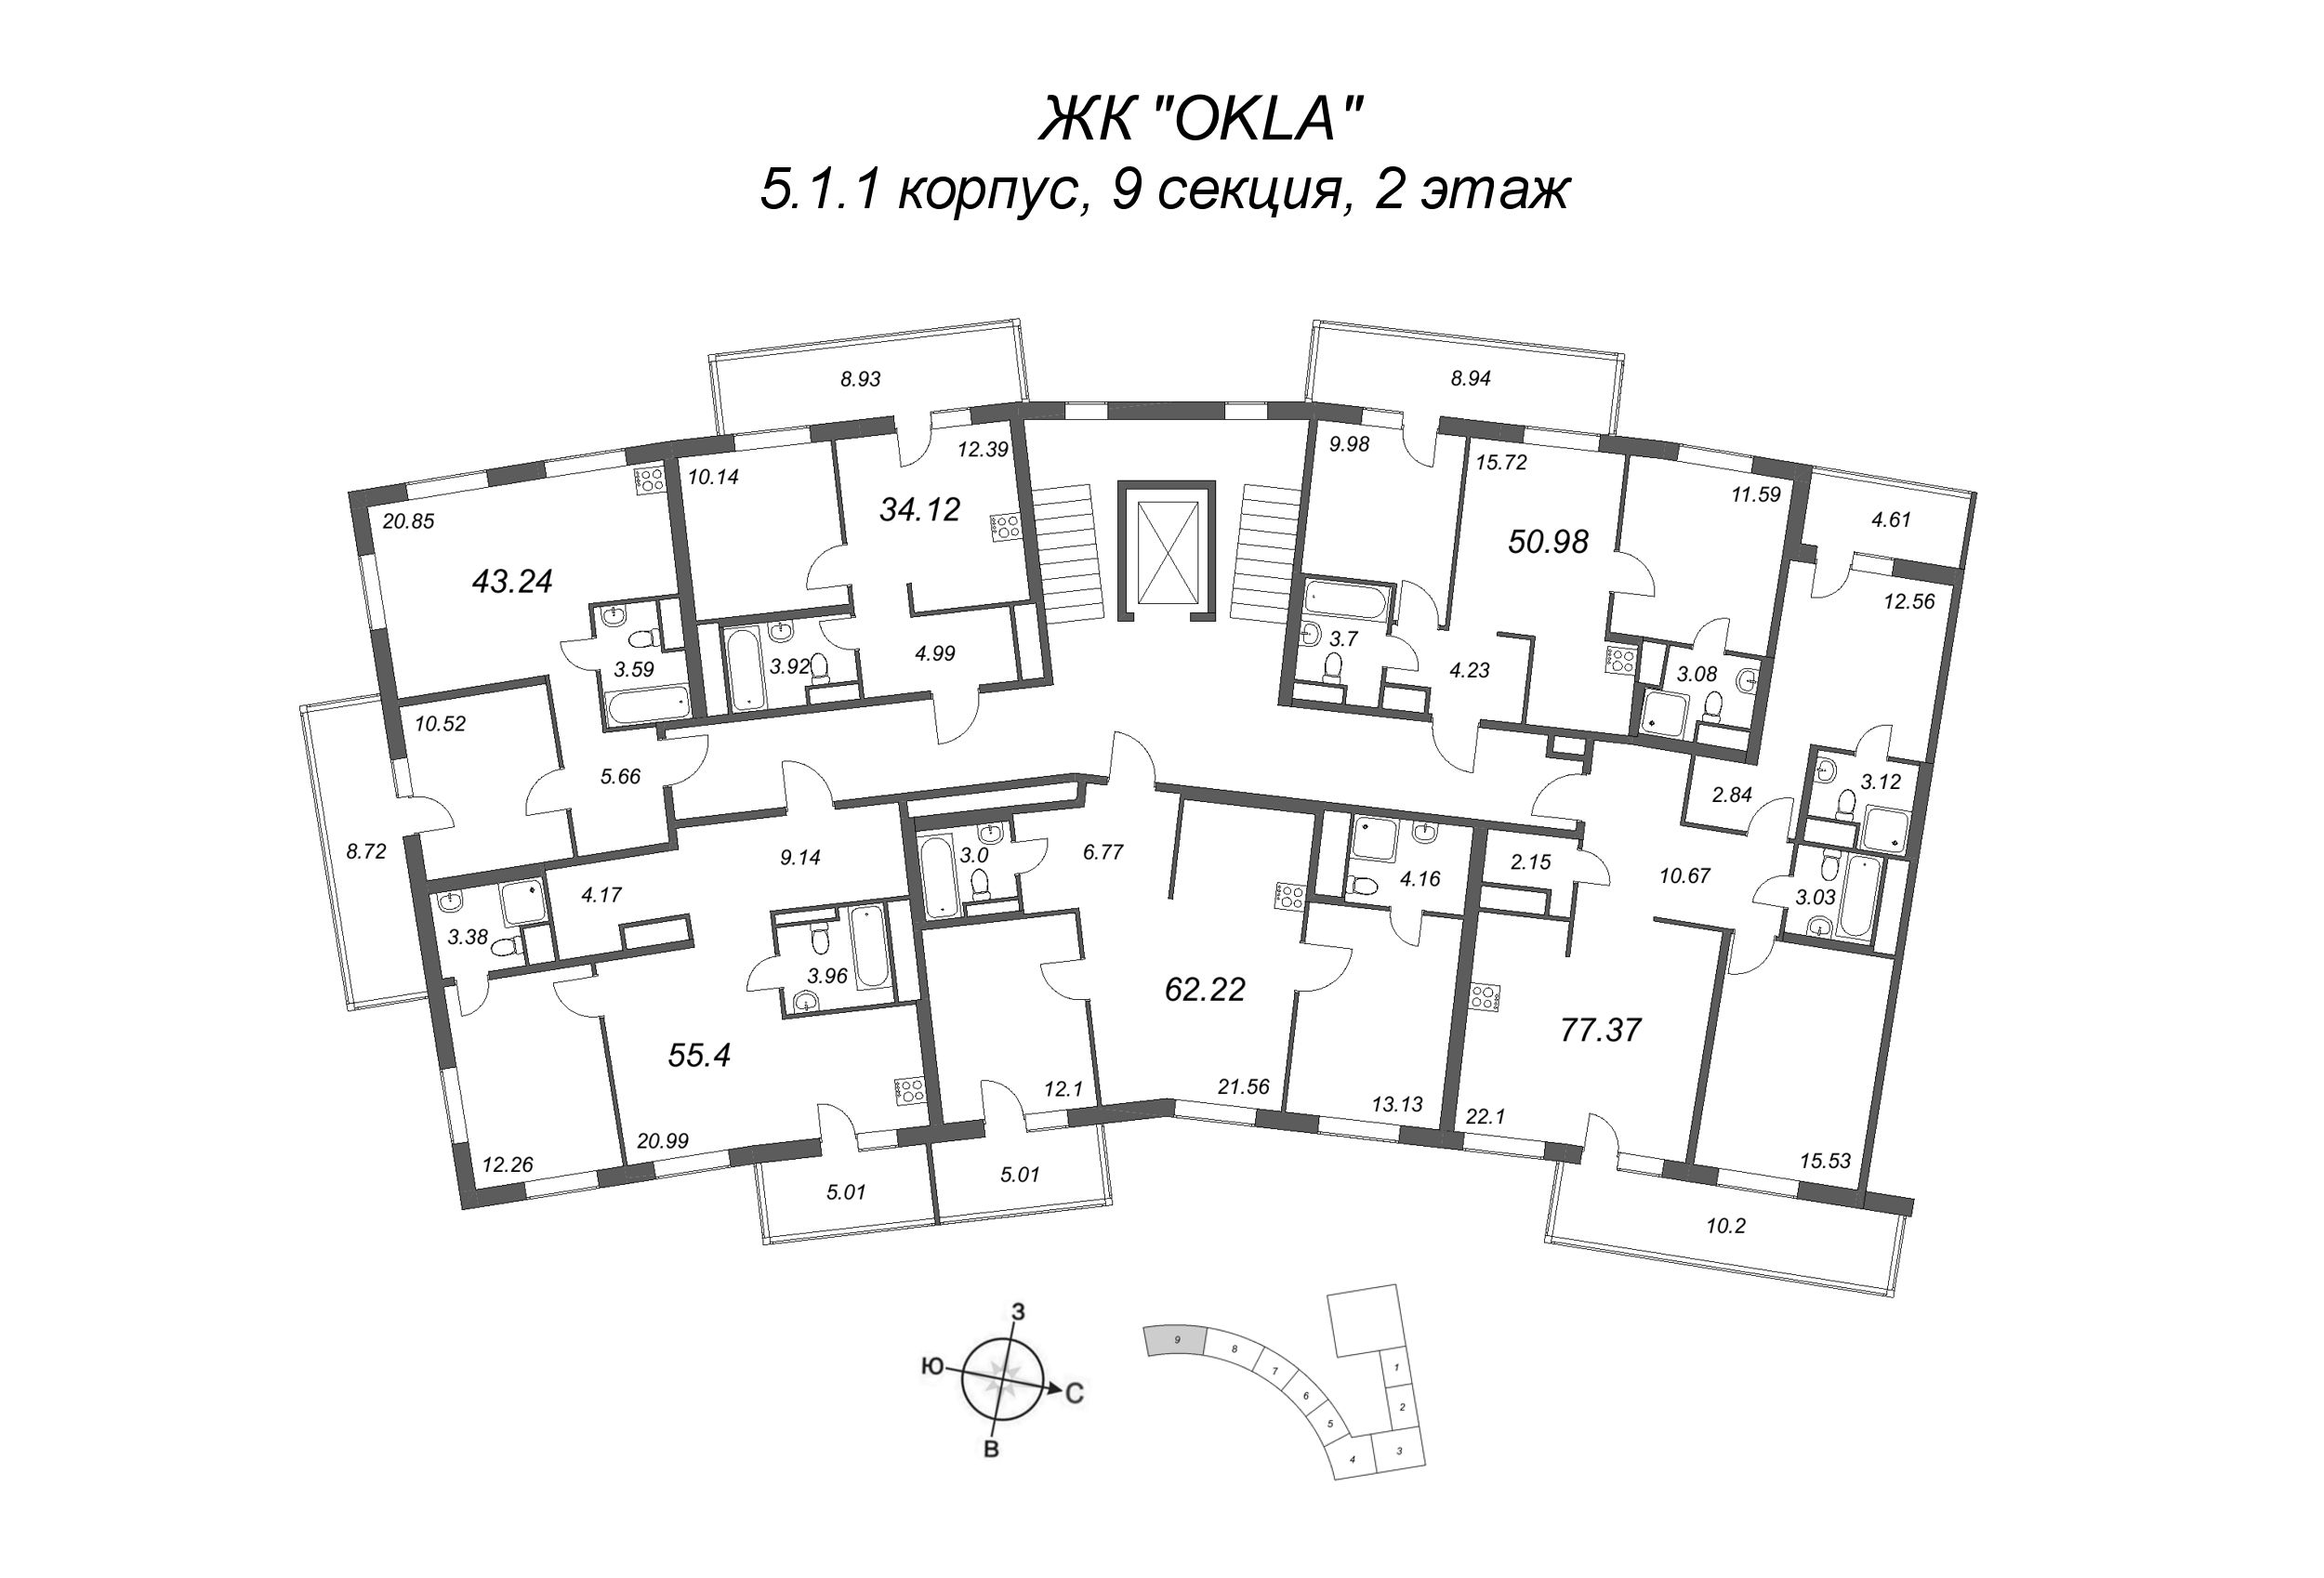 2-комнатная (Евро) квартира, 58.9 м² в ЖК "OKLA" - планировка этажа